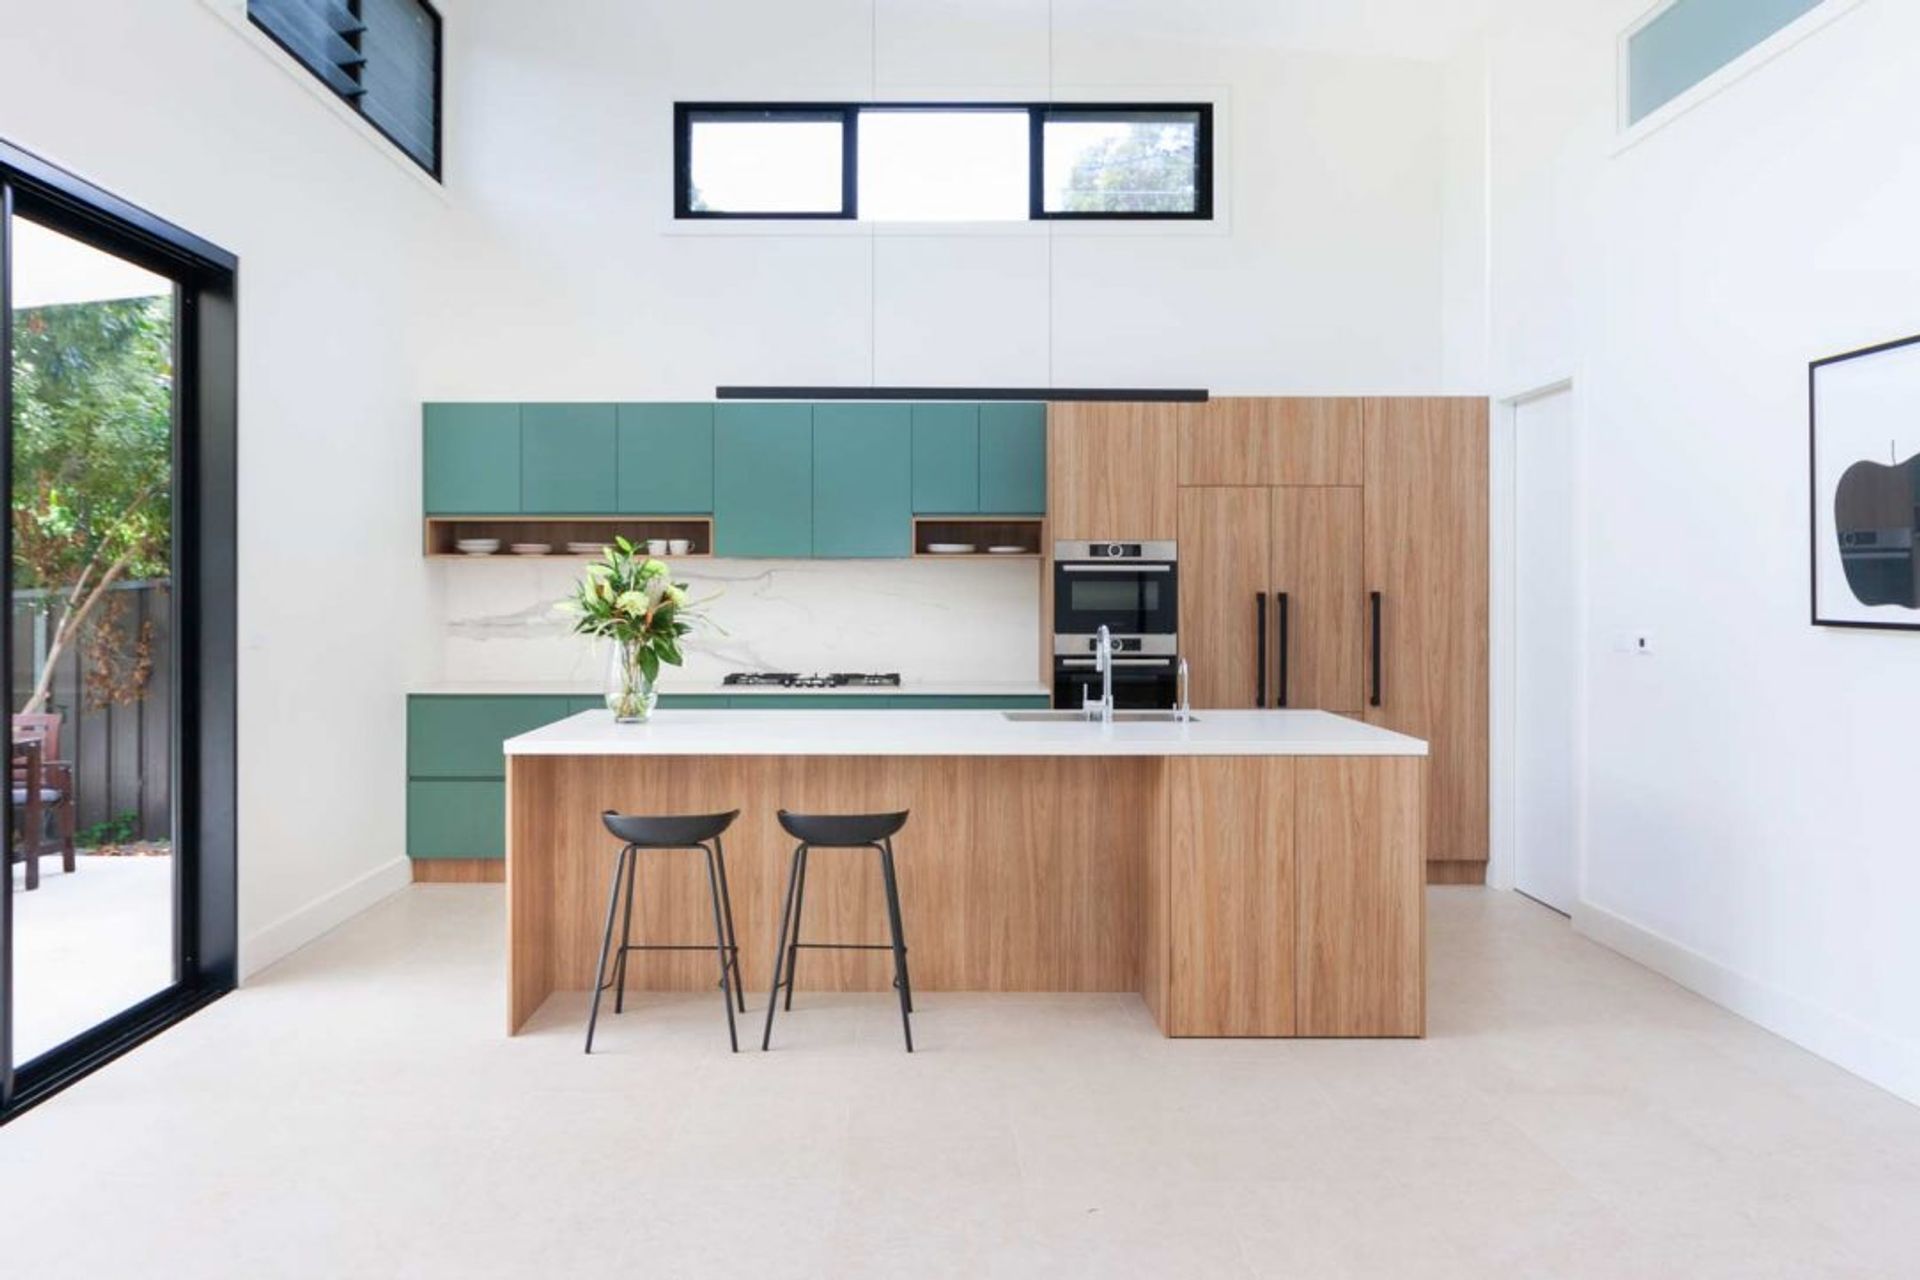 kitchen-design-sydney-modern-bosch-fisher-paykel-green-timber-premier-kitchens-03-1084x723.jpg